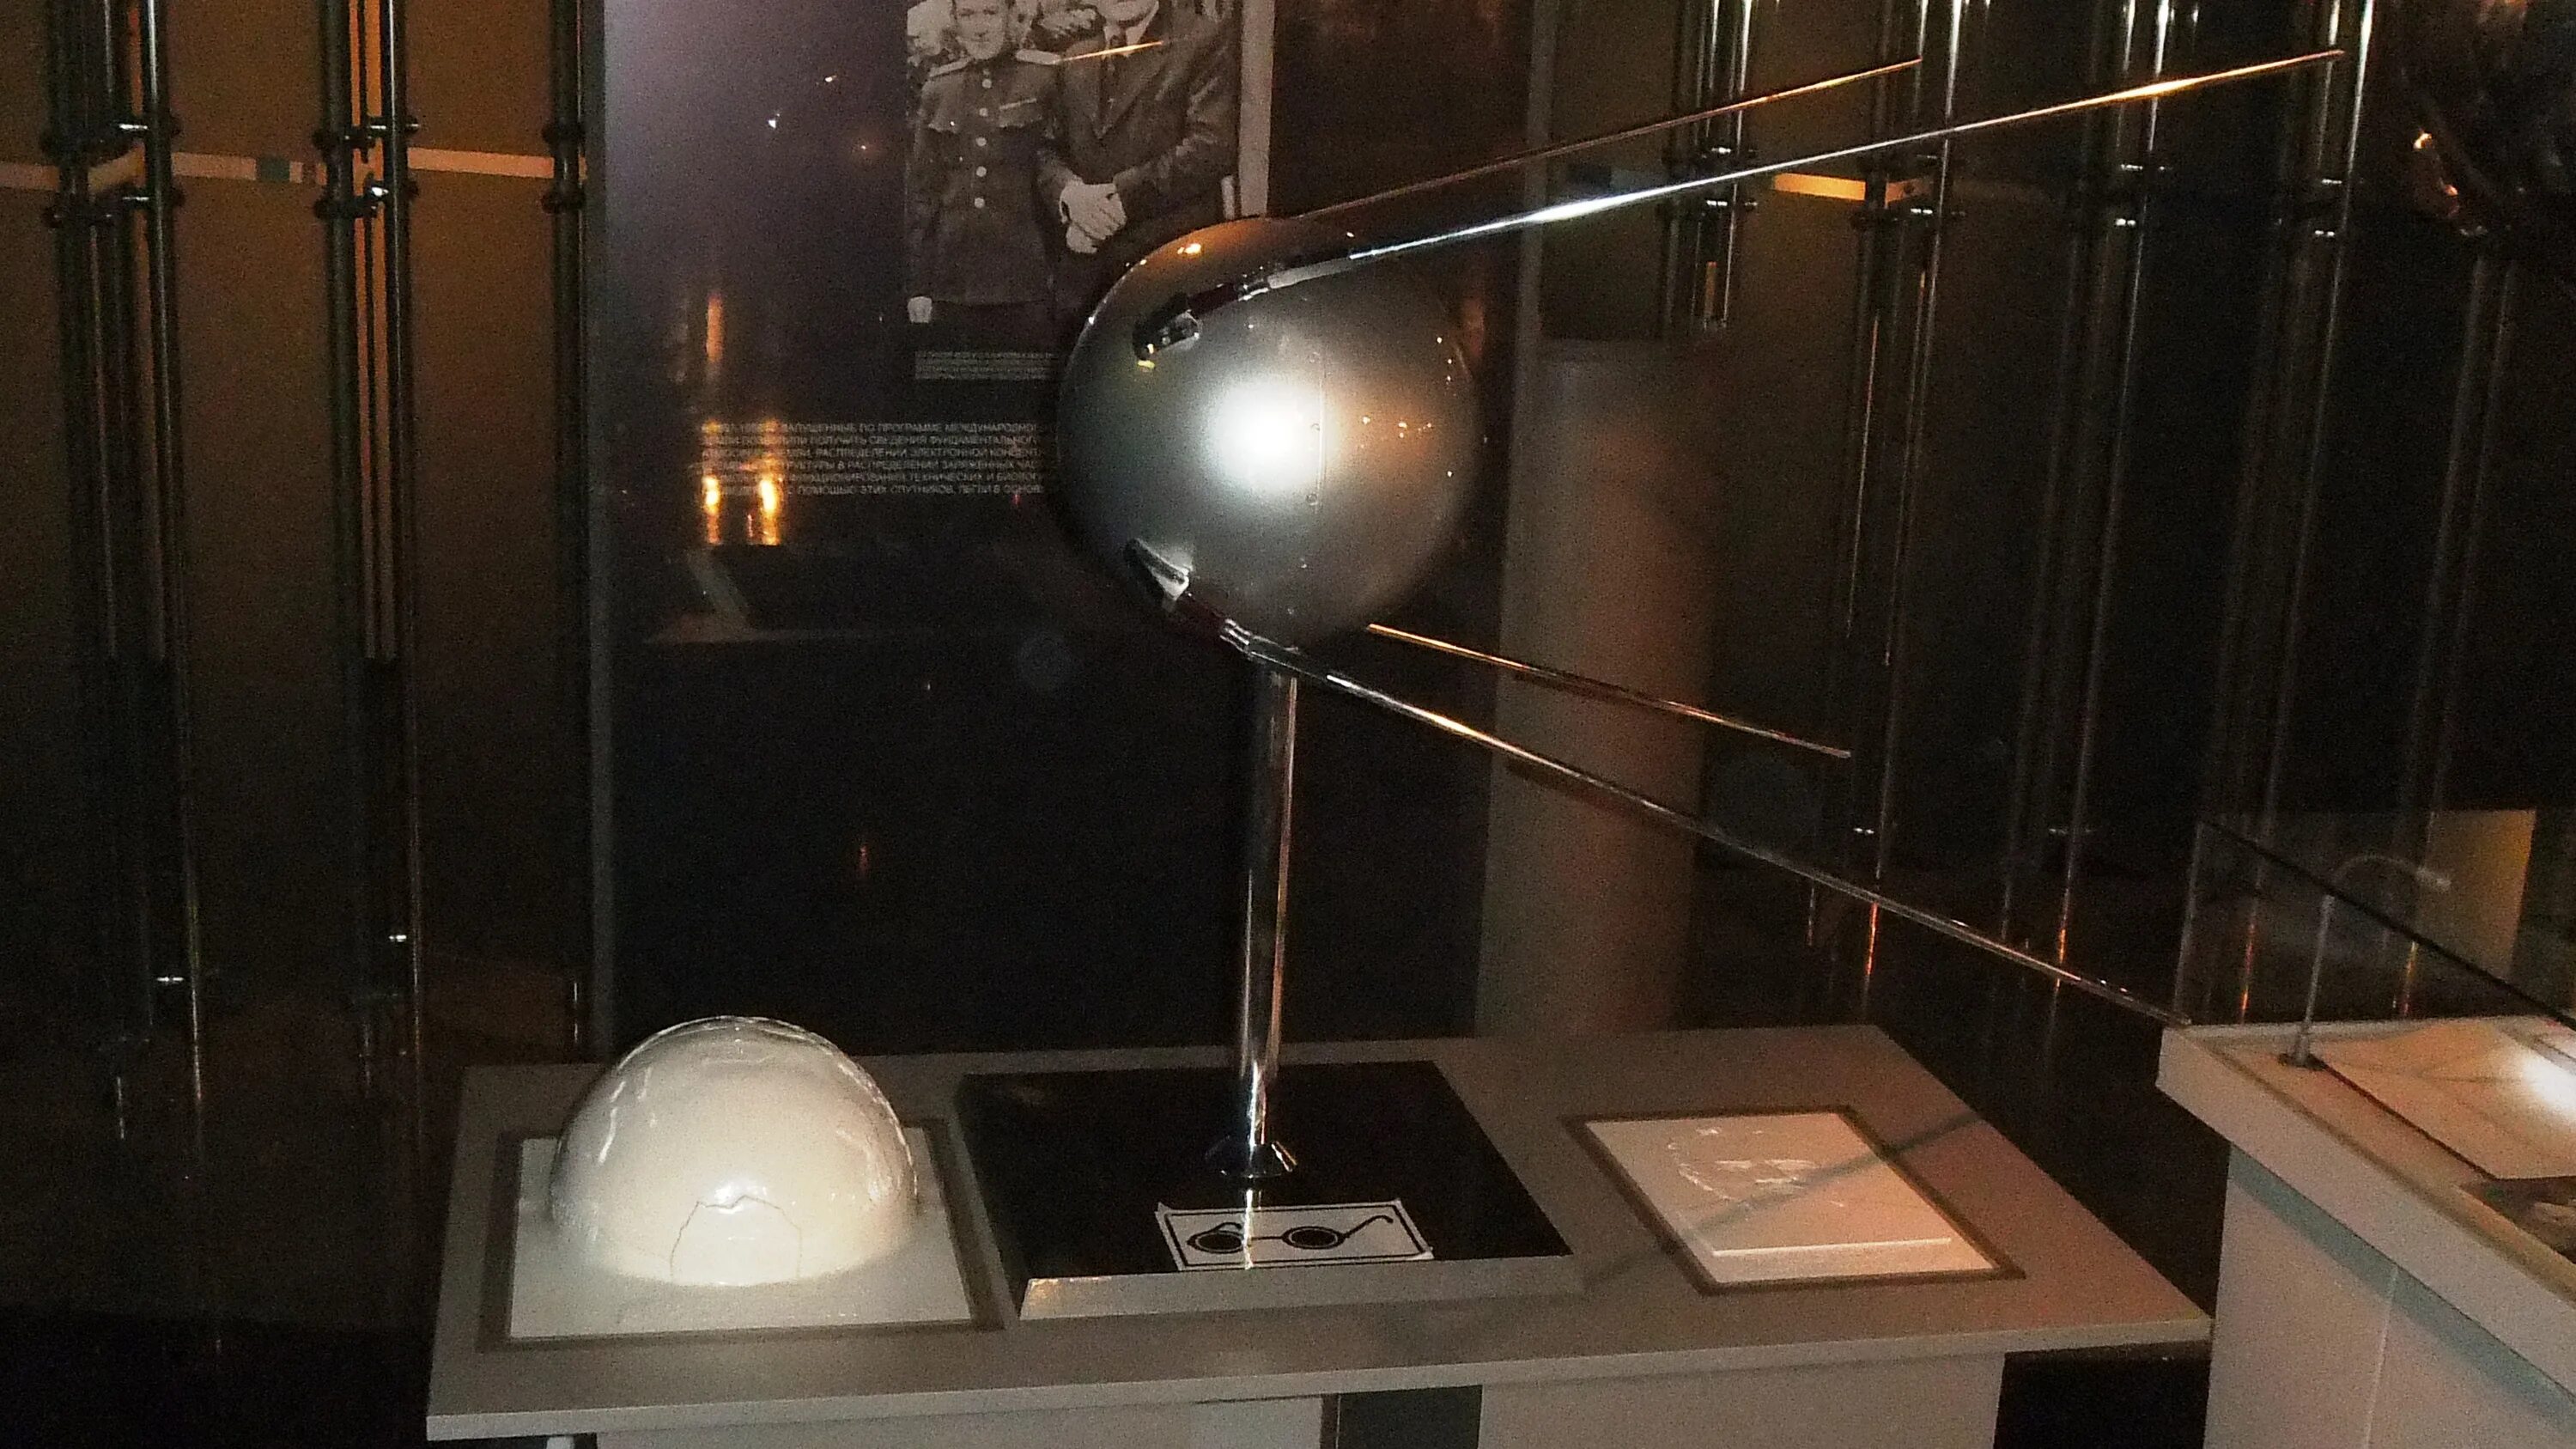 Масса первого искусственного спутника земли 83. Первый искусственный Спутник земли 1957 планетарий. Королев и первый Спутник земли.